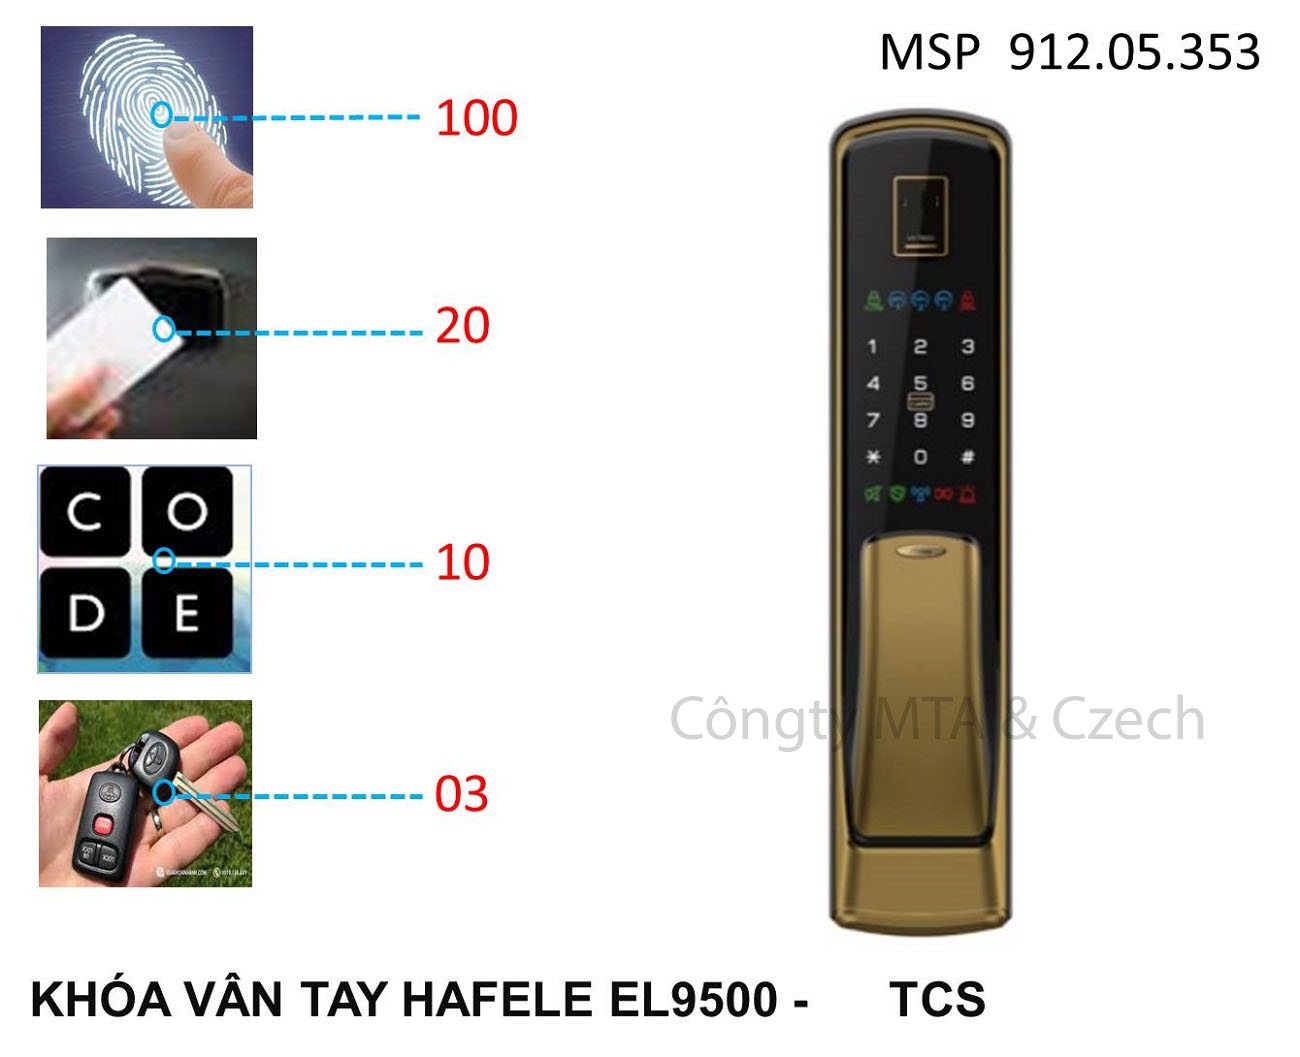 Khóa vân tay Hafele EL9500-TCL màu vàng 915.05.353